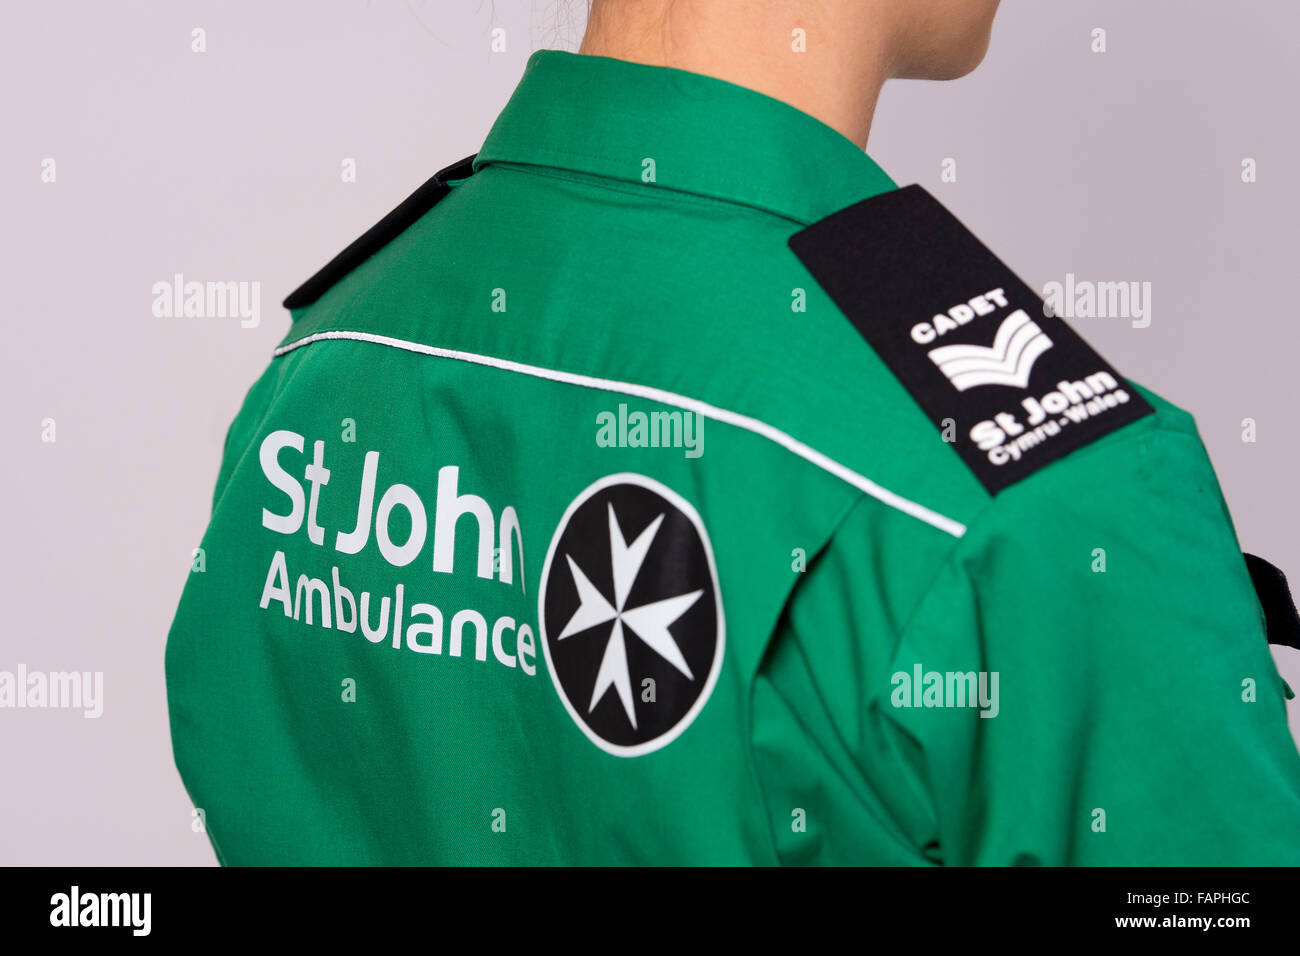 A St. John Ambulance green uniform. Stock Photo